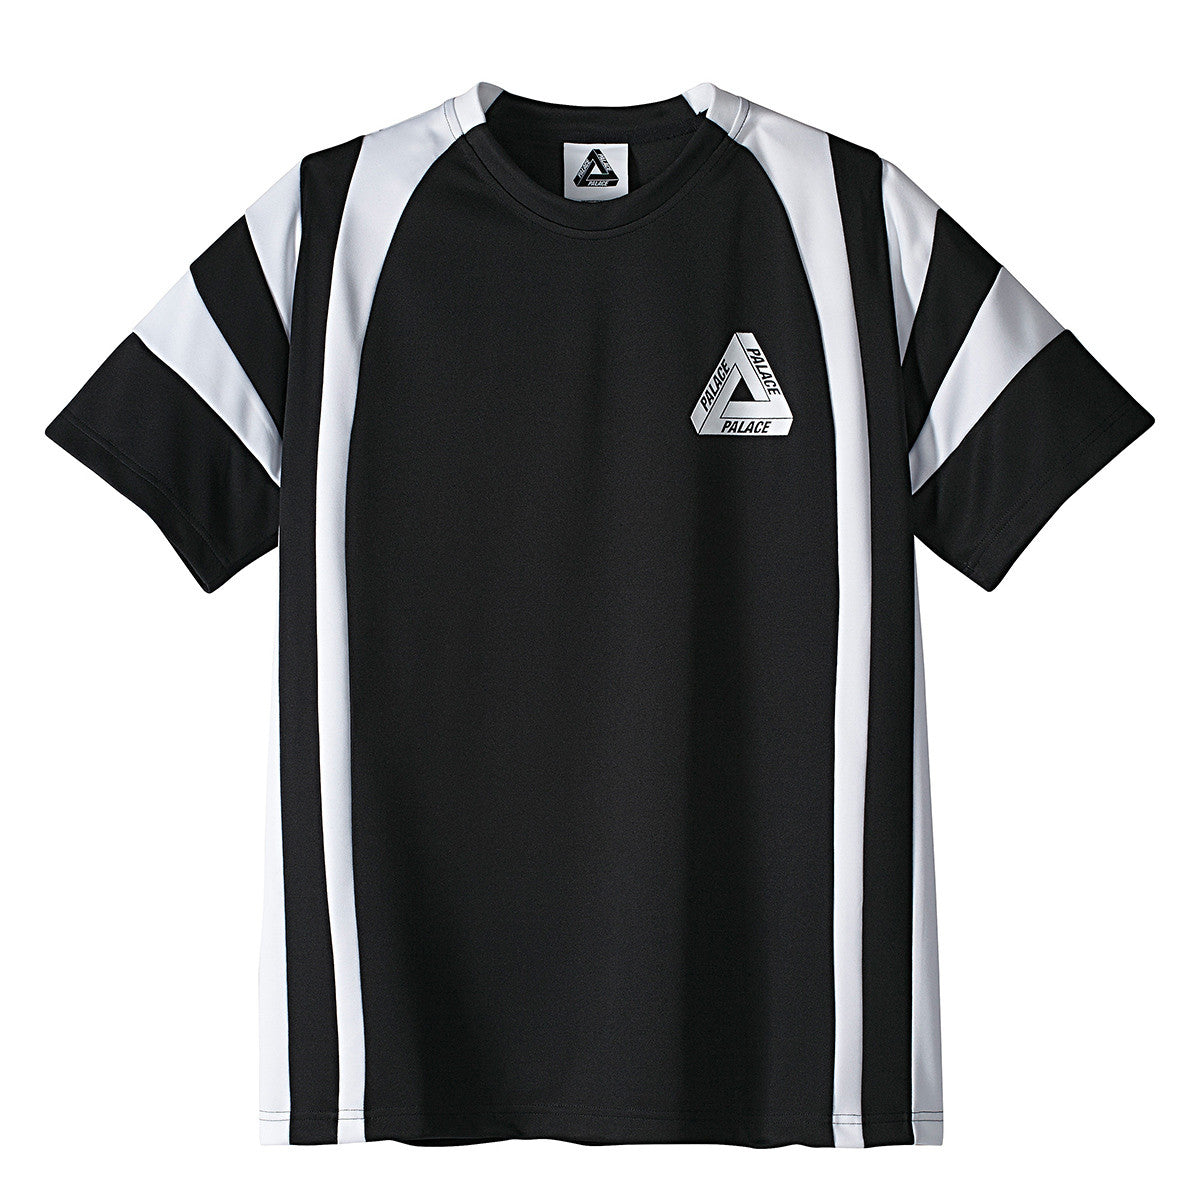 Adidas x Palace T-Shirt Black / White | Flatspot